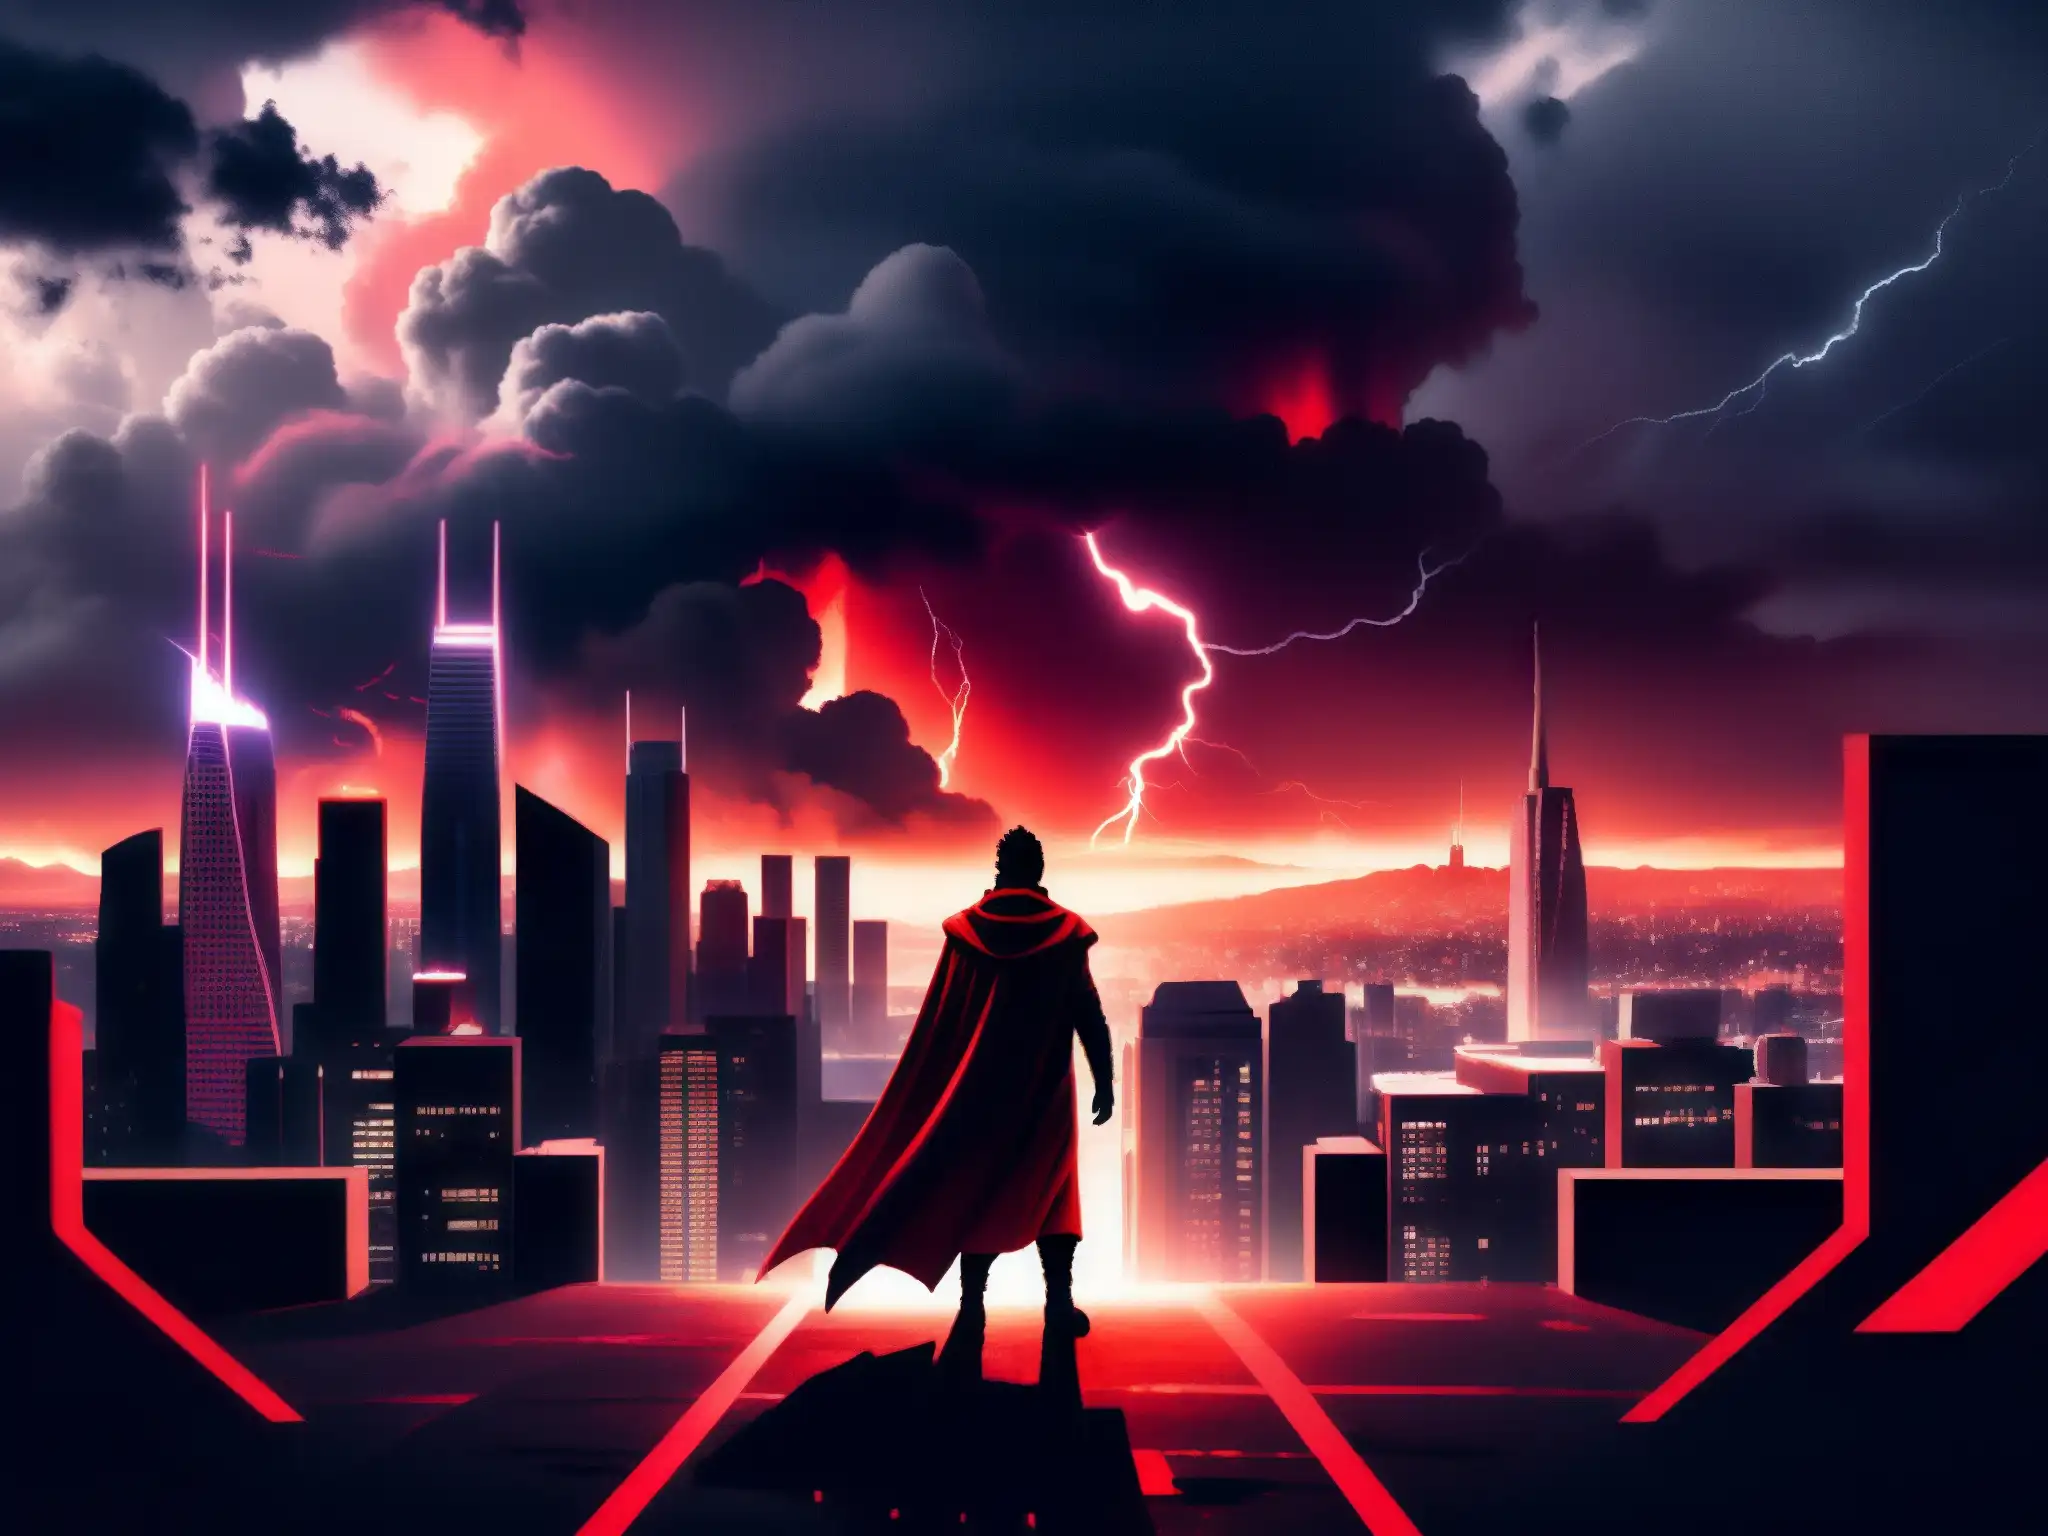 Imponente ciudad futurista envuelta en un ominoso resplandor rojo, con relámpagos y nubes turbulentas